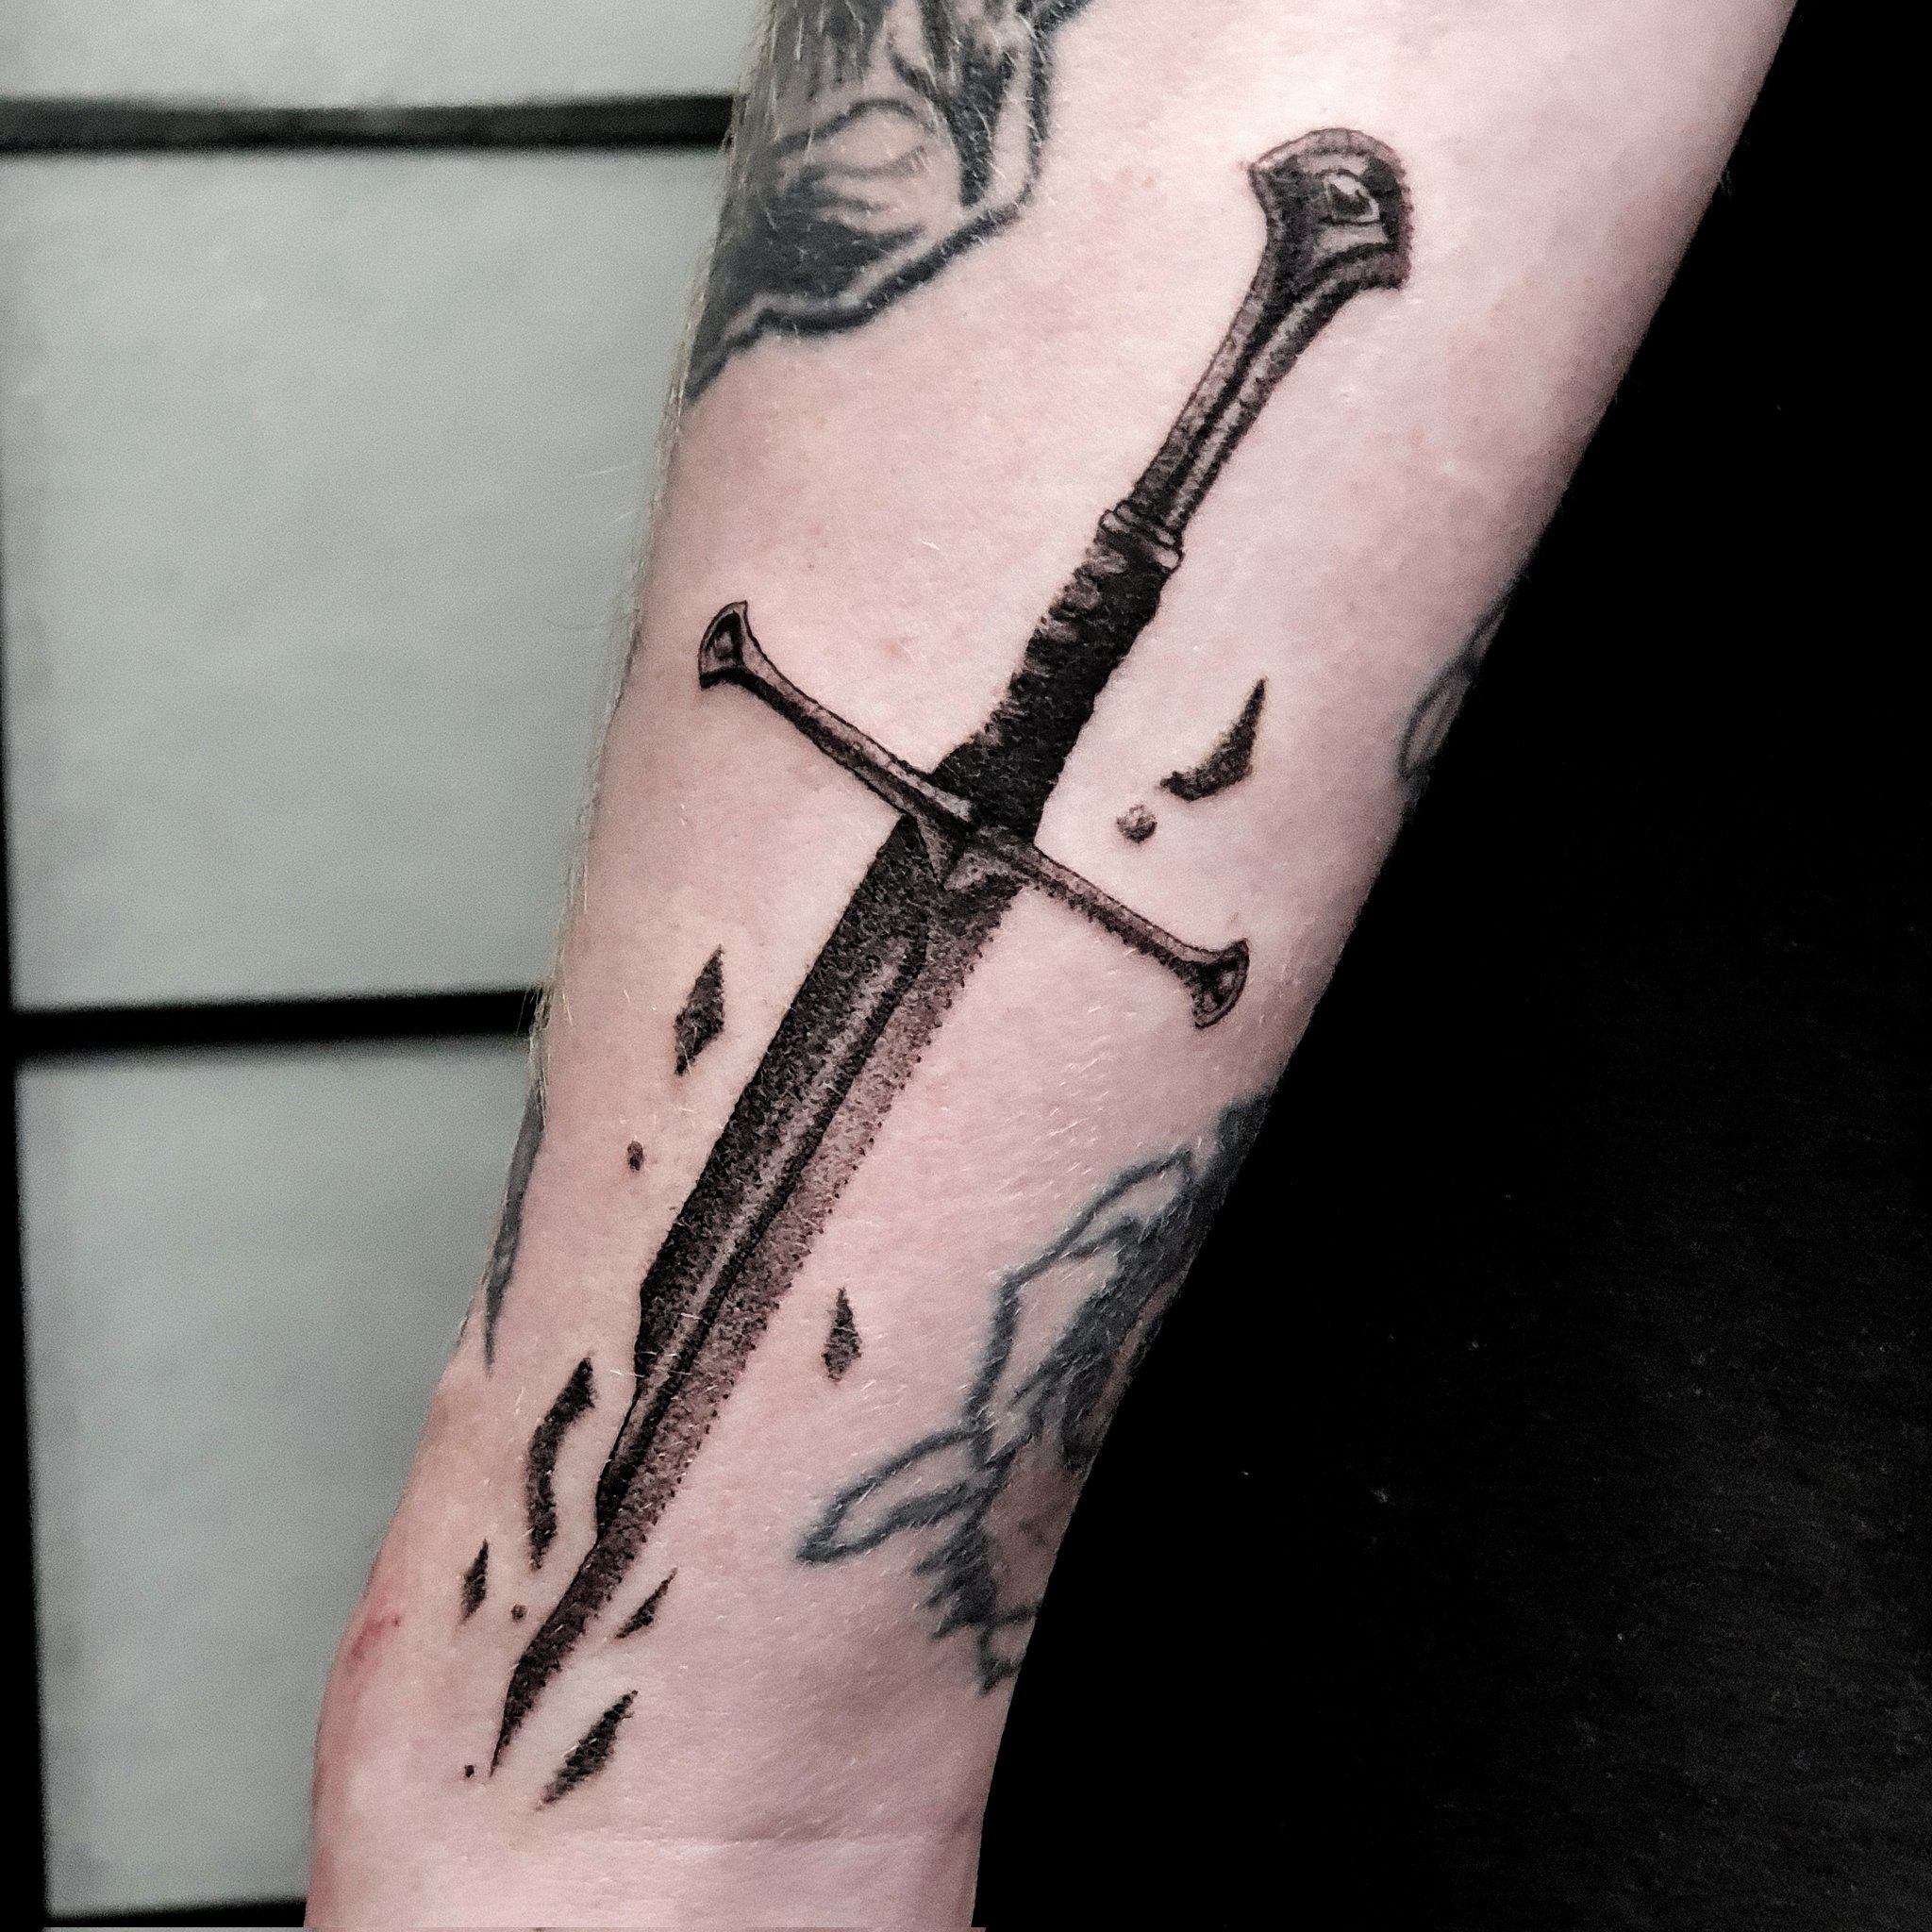 Fine line broken sword tattoo on the inner forearm.